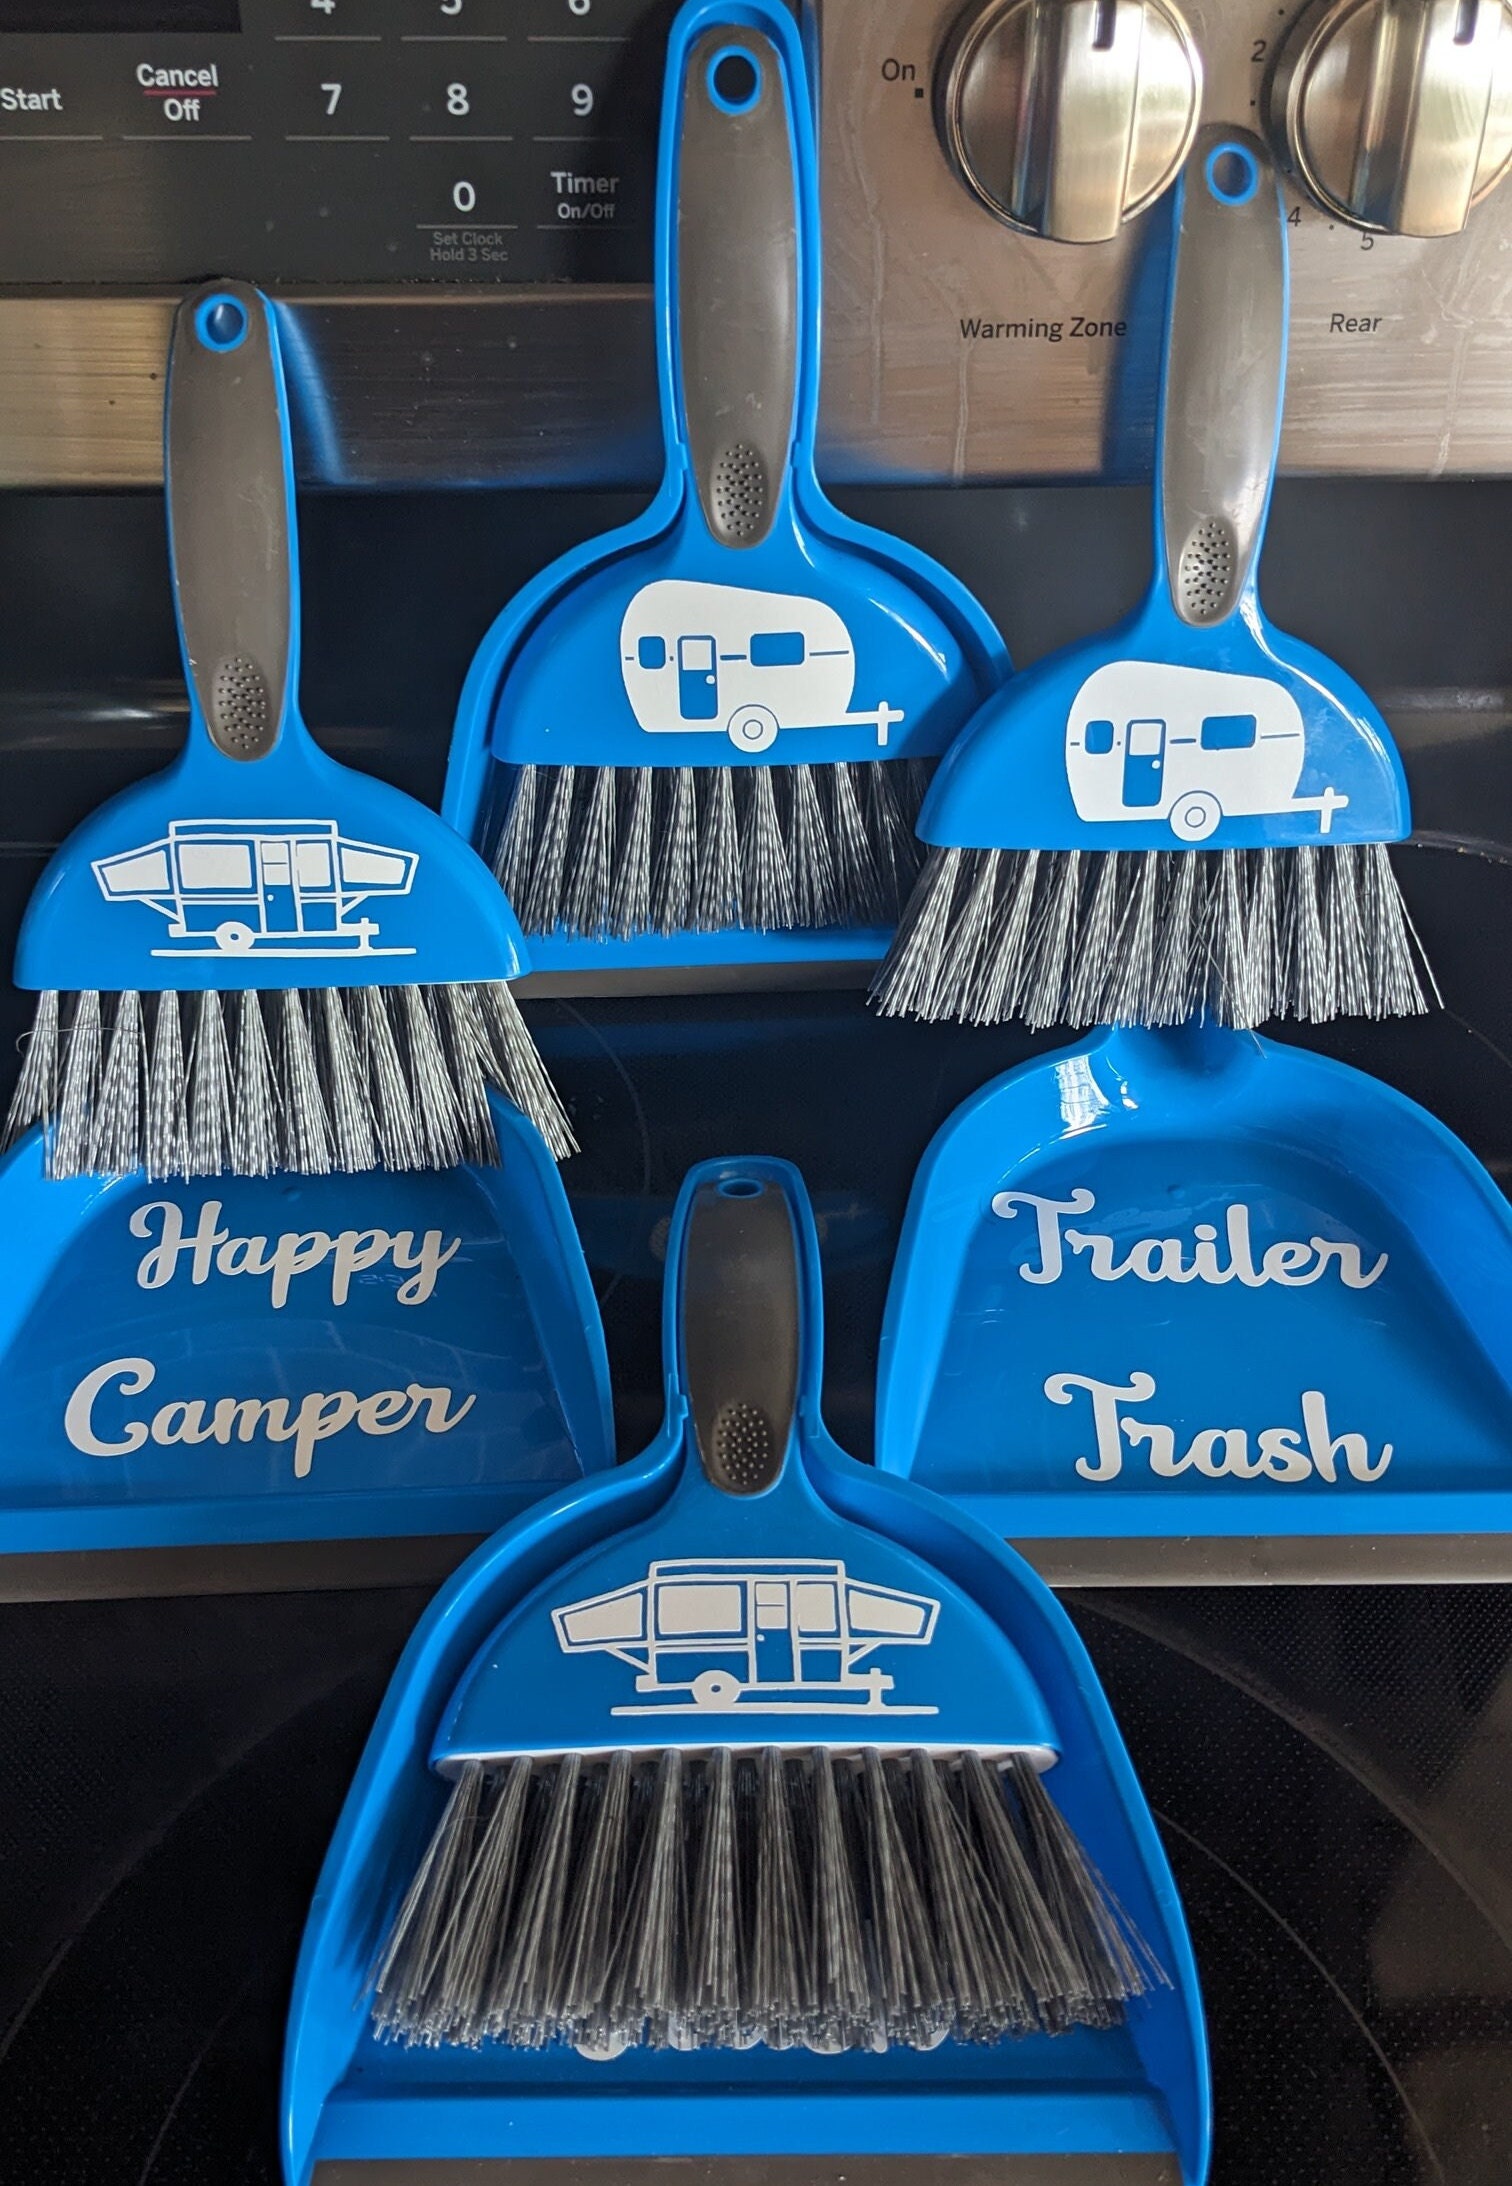 Broom Mop Dustpan for KIDS Escoba Trapeador Recogedor Para Niños 